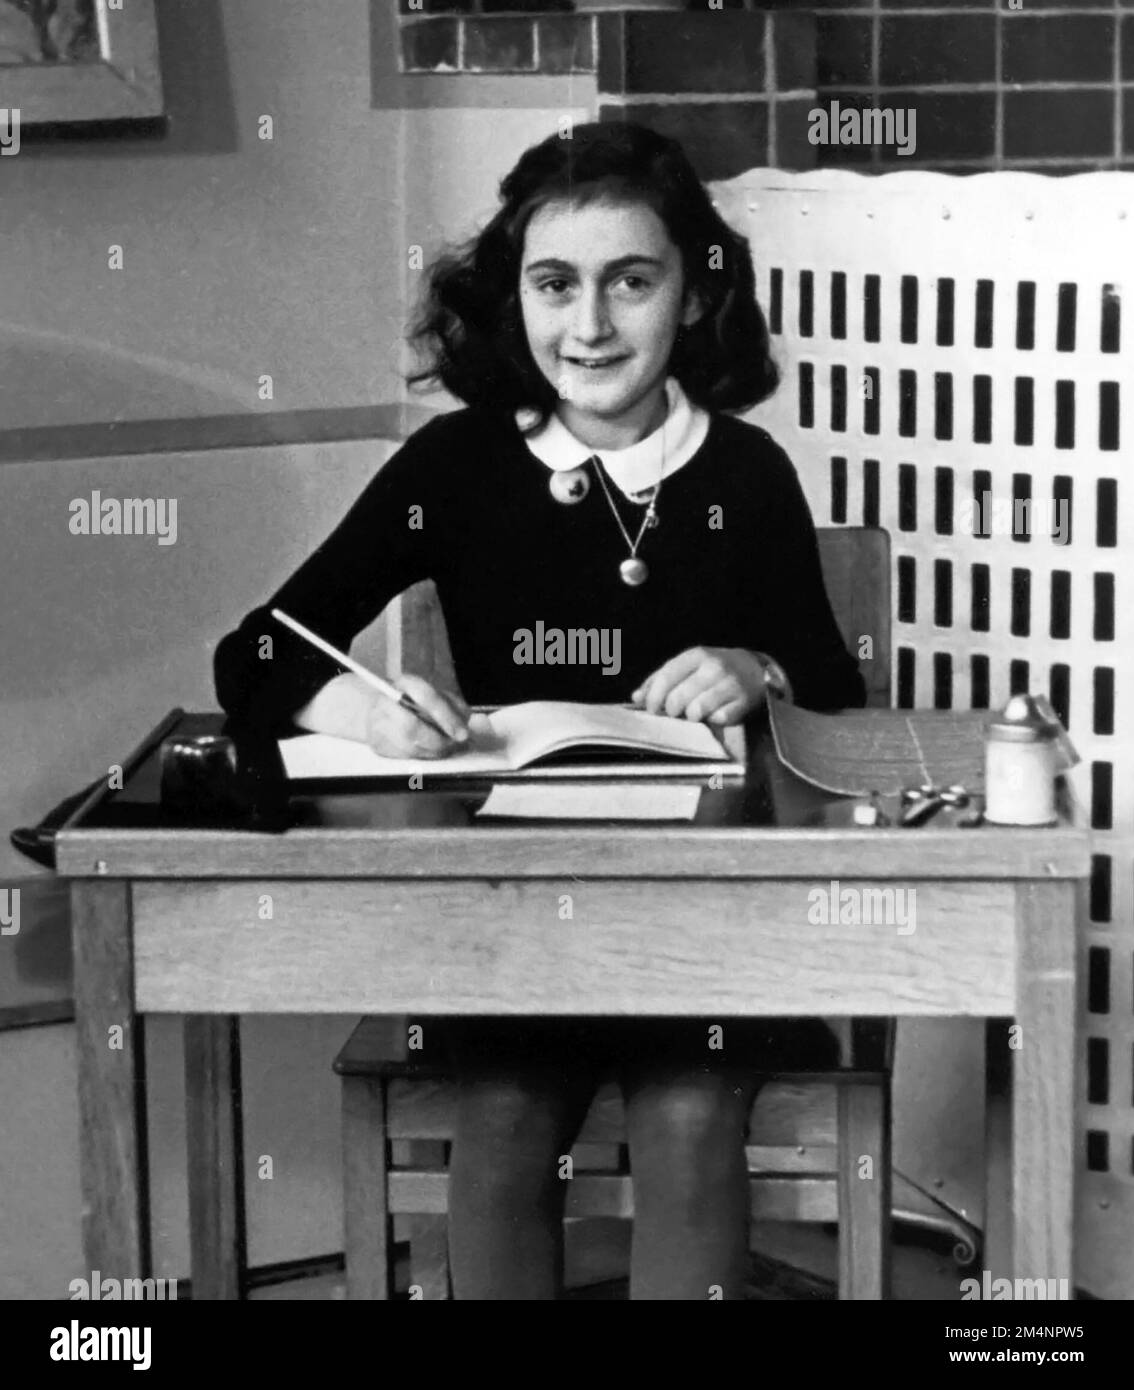 Anne Frank. Das Schulfoto von Annelies Marie 'Anne' Frank (1929-1945), dem jungen jüdischen Mädchen, das mit seinem Tagebuch über das Leben unter der Besatzung der Nazis berühmt wurde, machte sie berühmt, 1940 Stockfoto